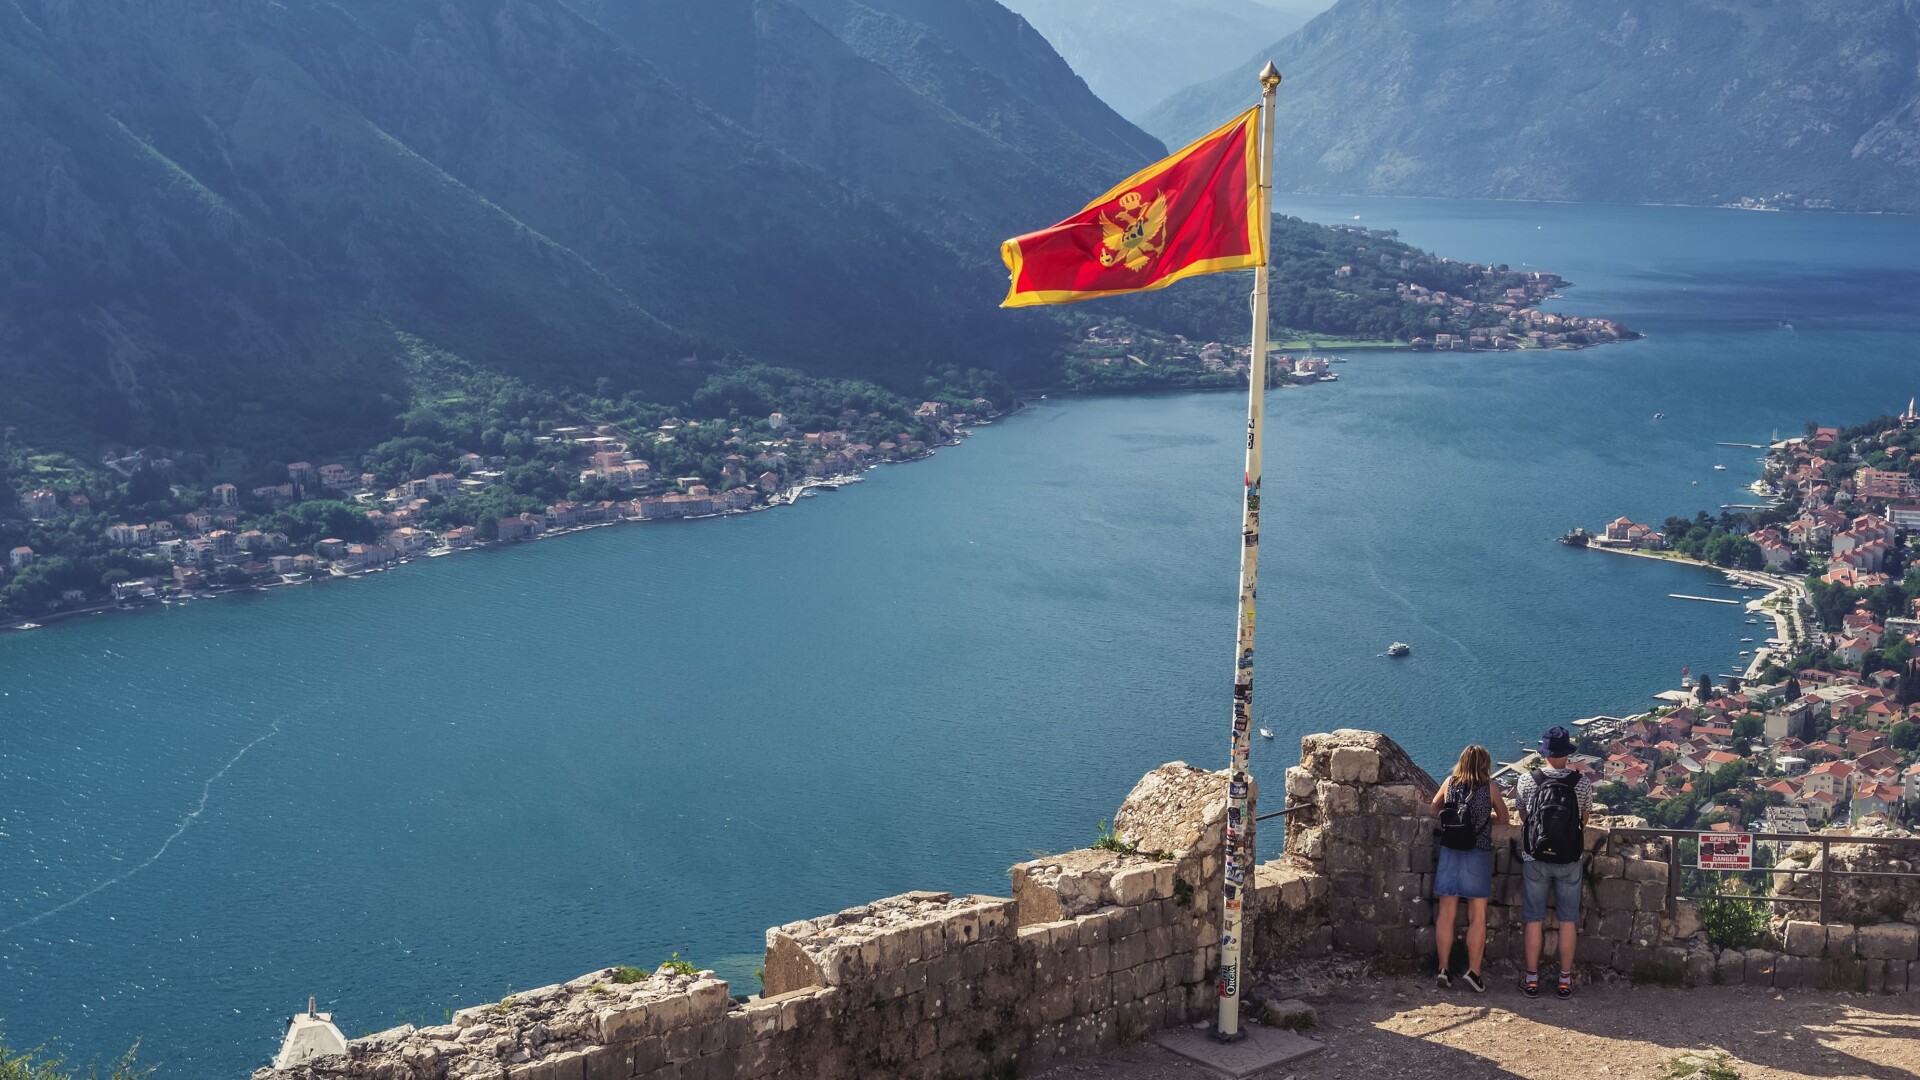 Muntenegru obiective turistice